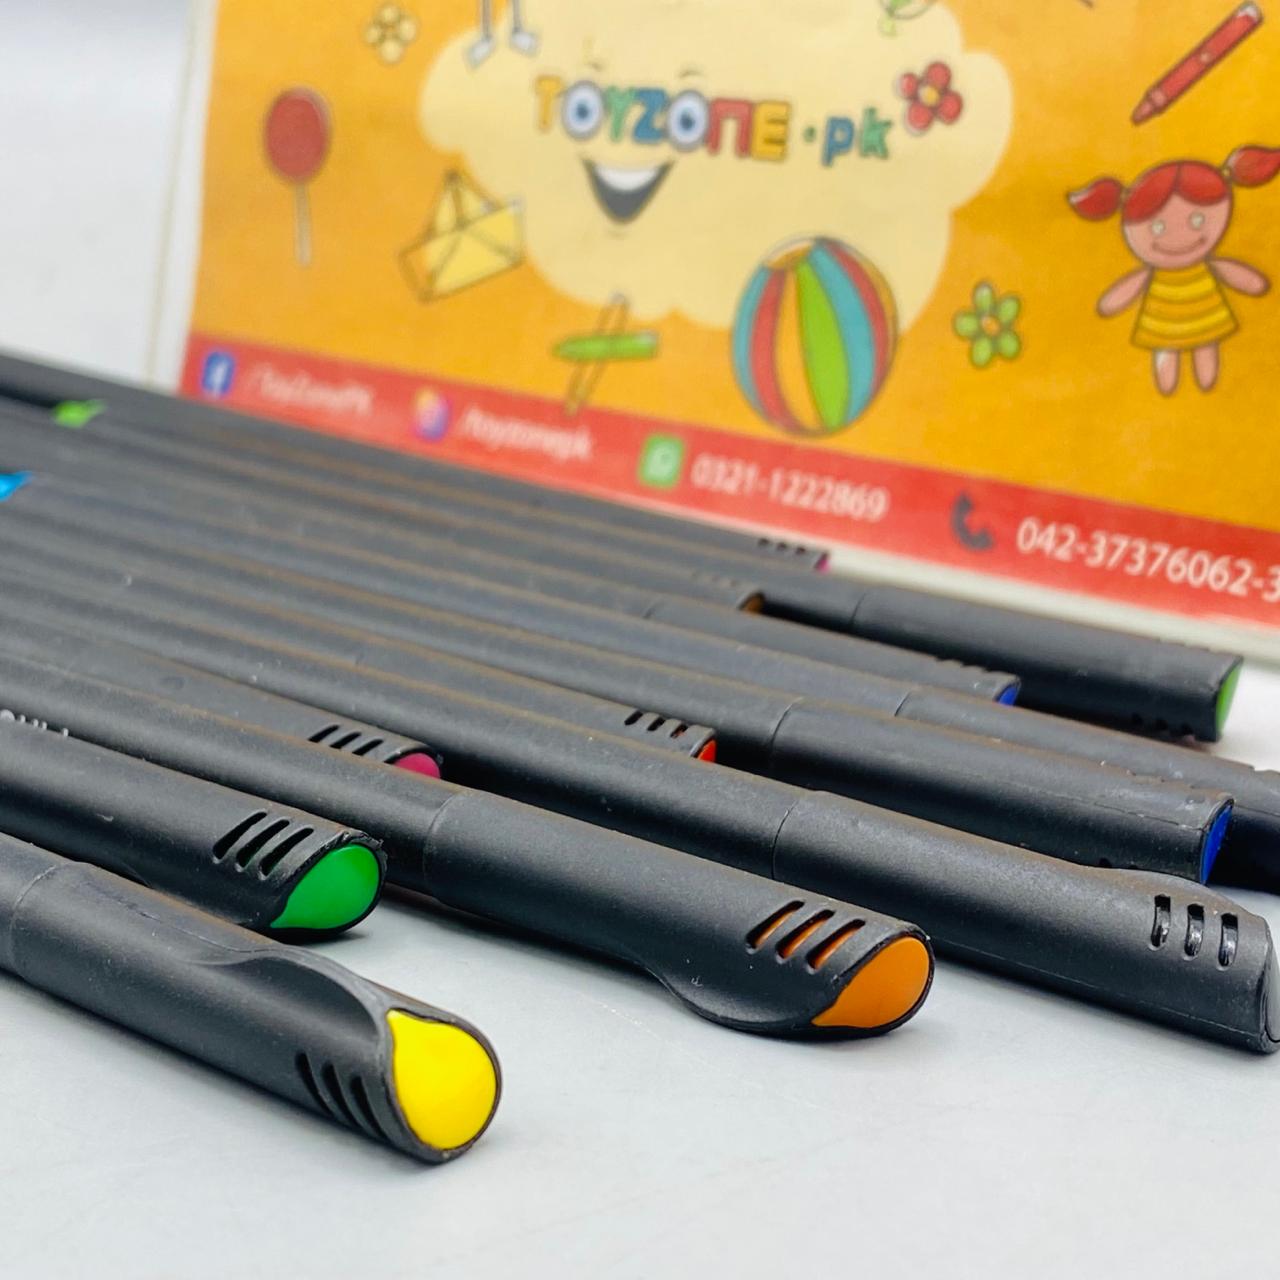 Fineliner Color Pen 36Pcs